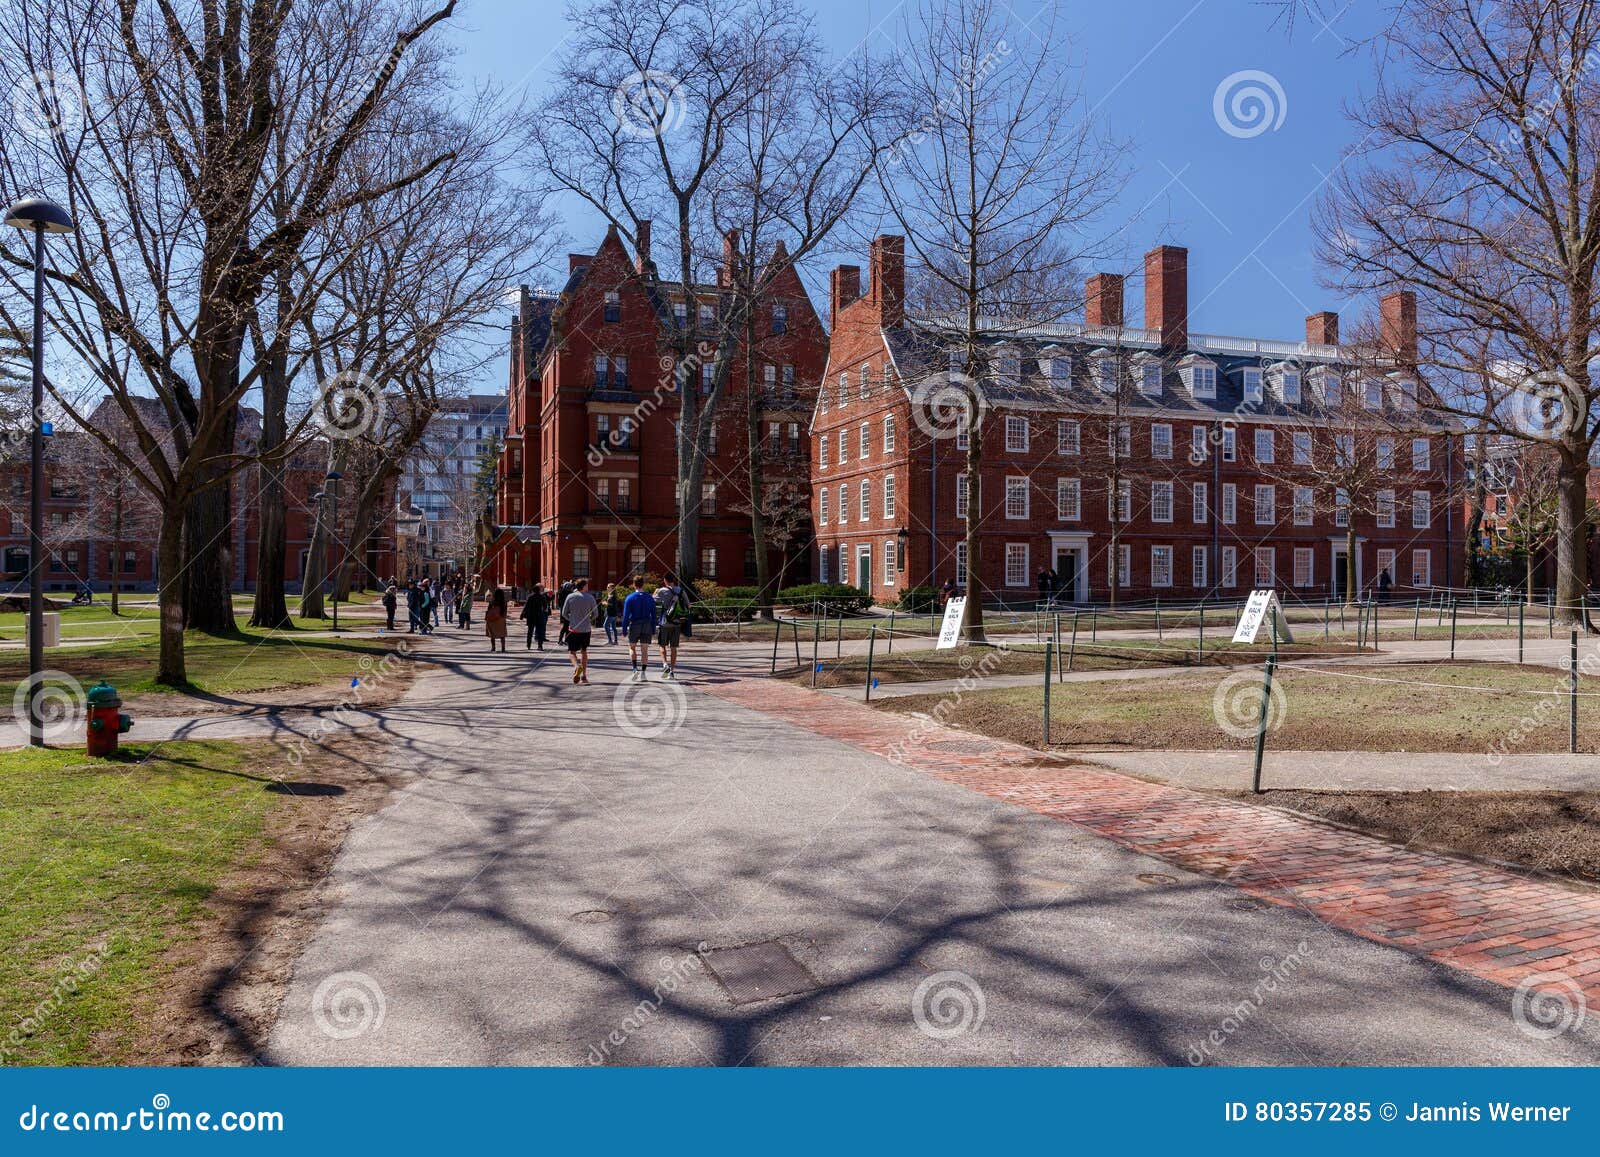 2023哈佛大学游玩攻略,你可以看到许多宿舍、教室楼...【去哪儿攻略】